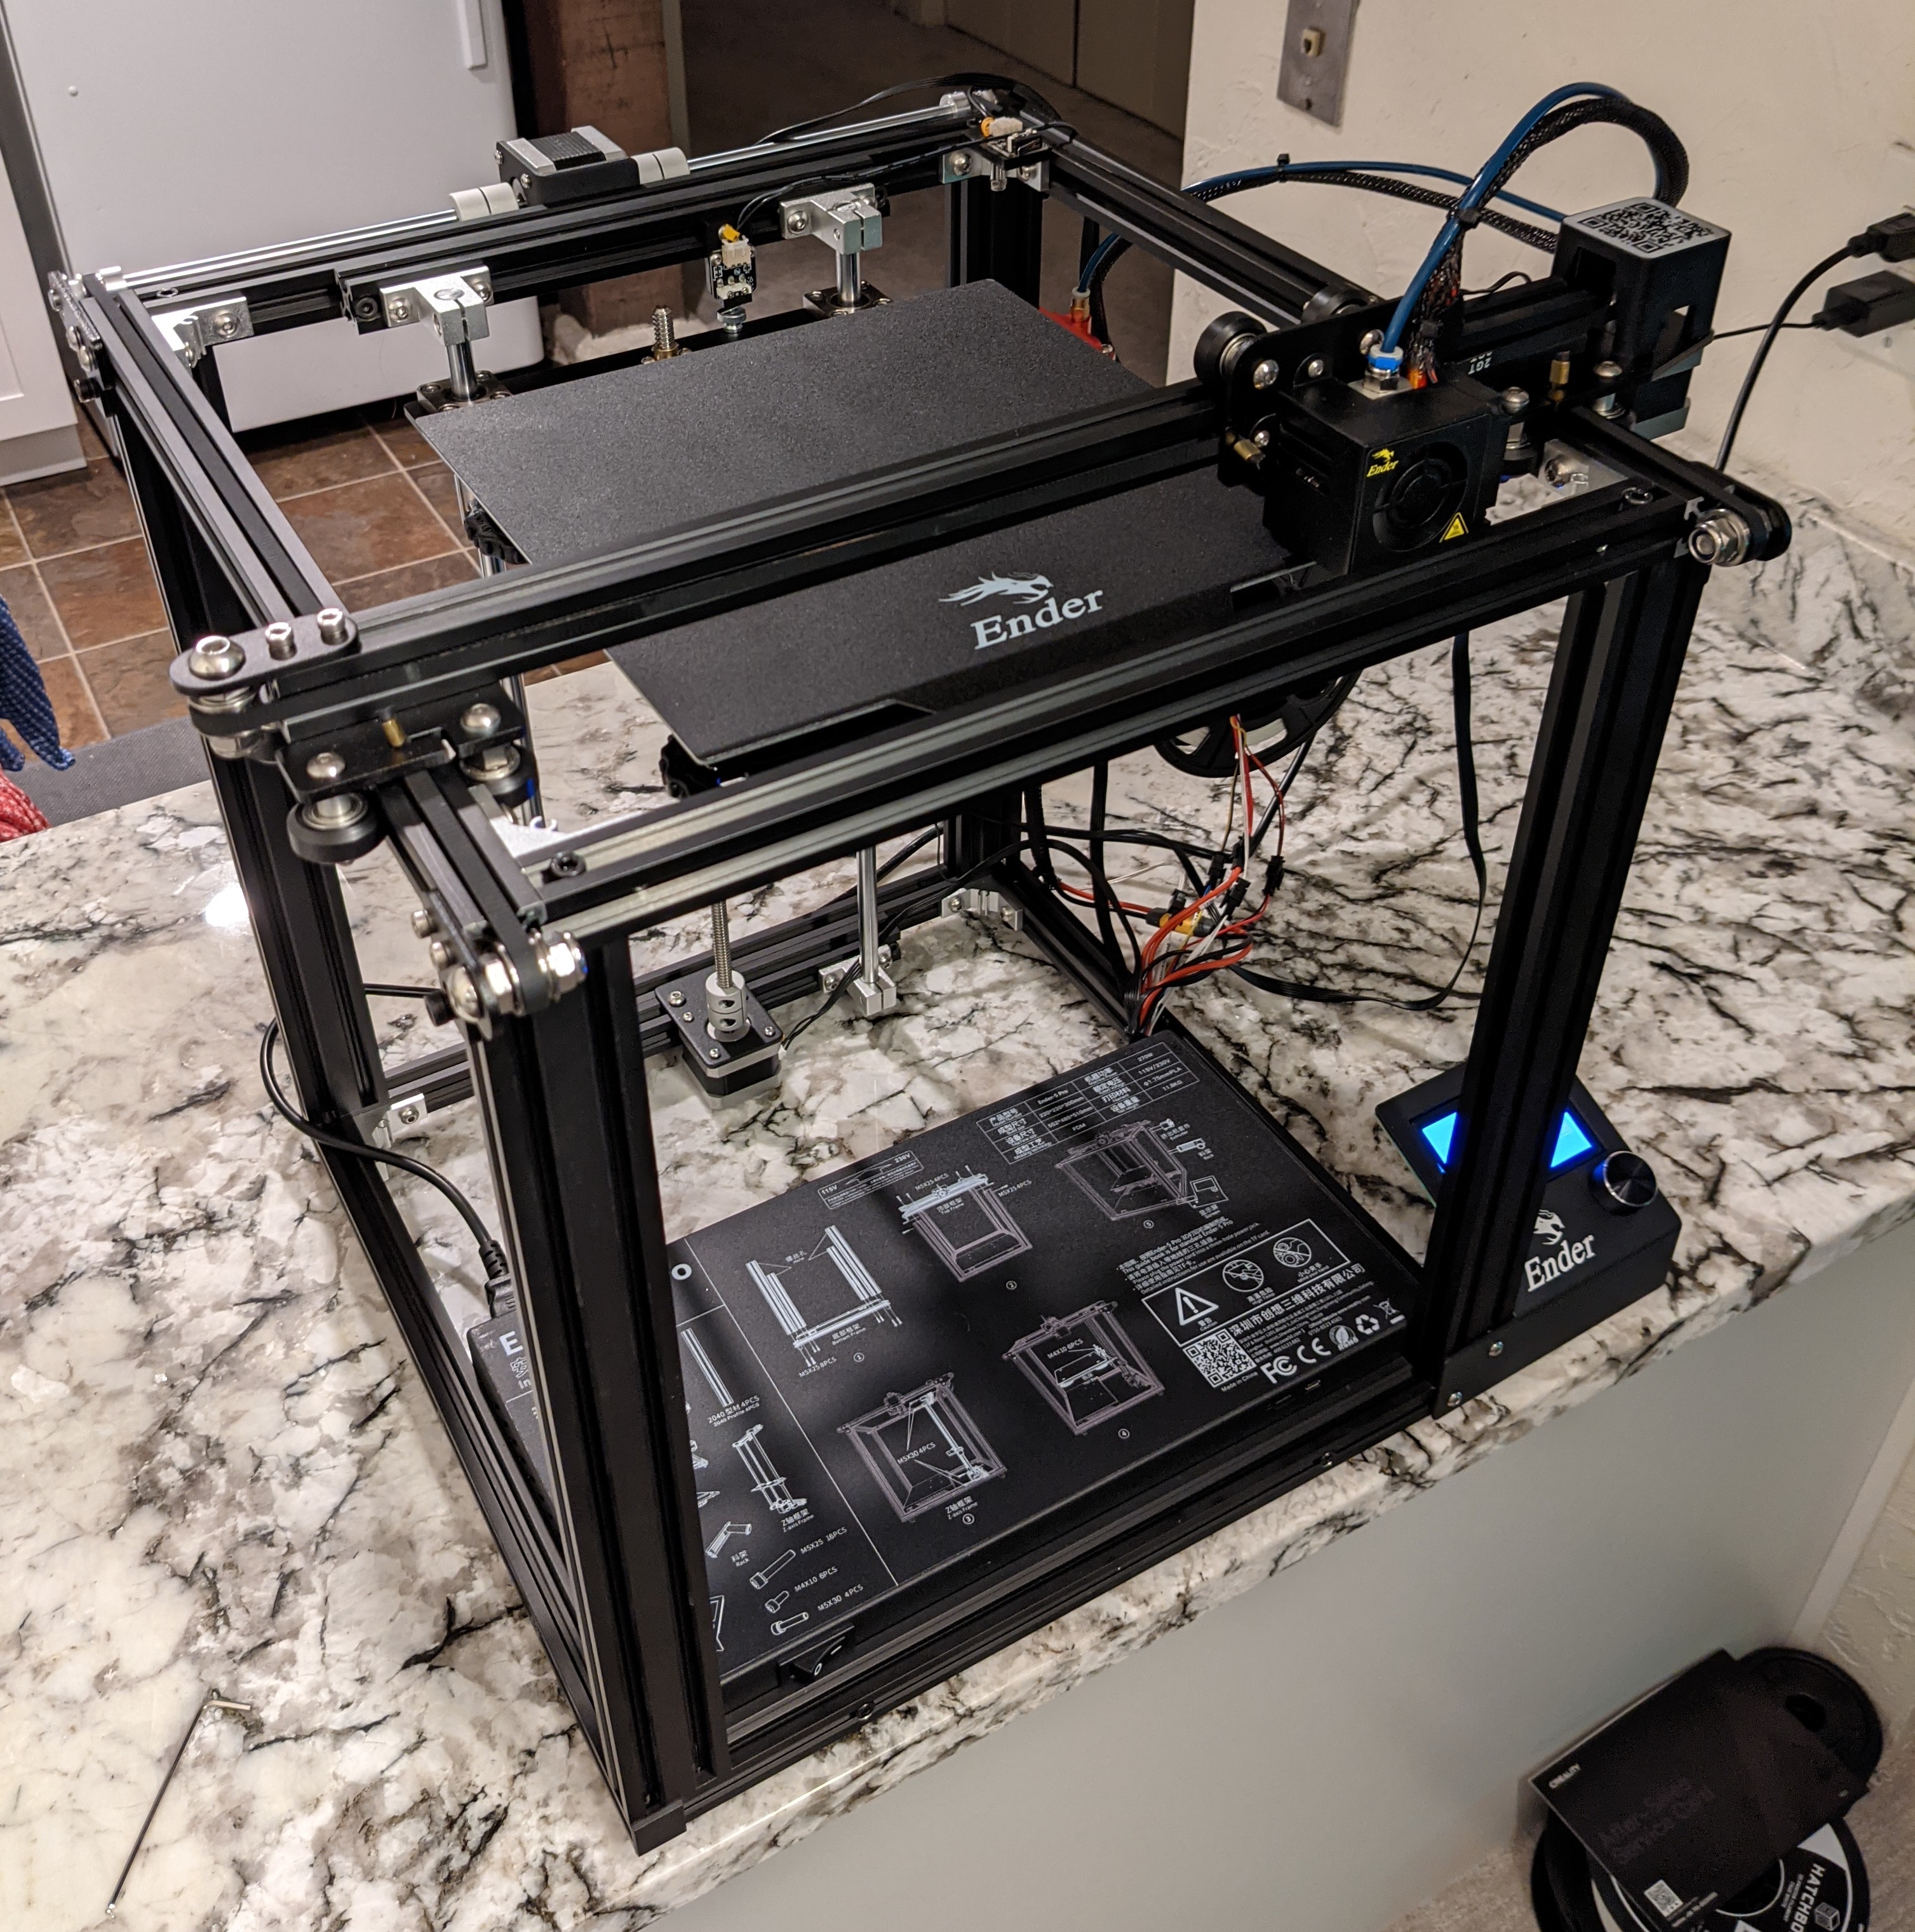 Assembled printer